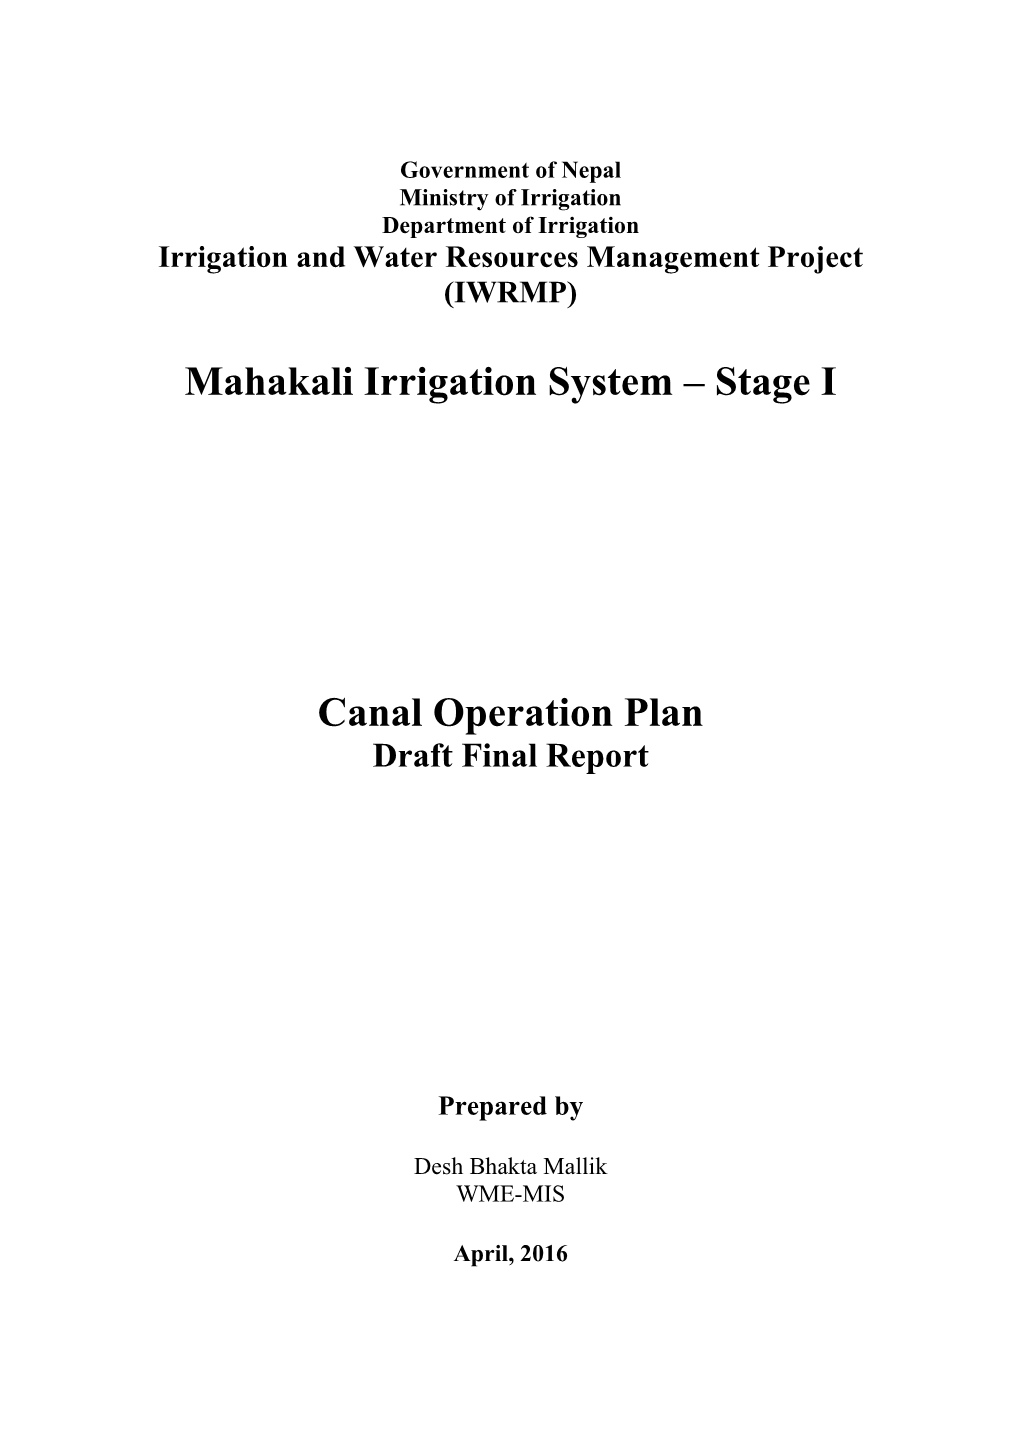 Mahakali Irrigation System – Stage I